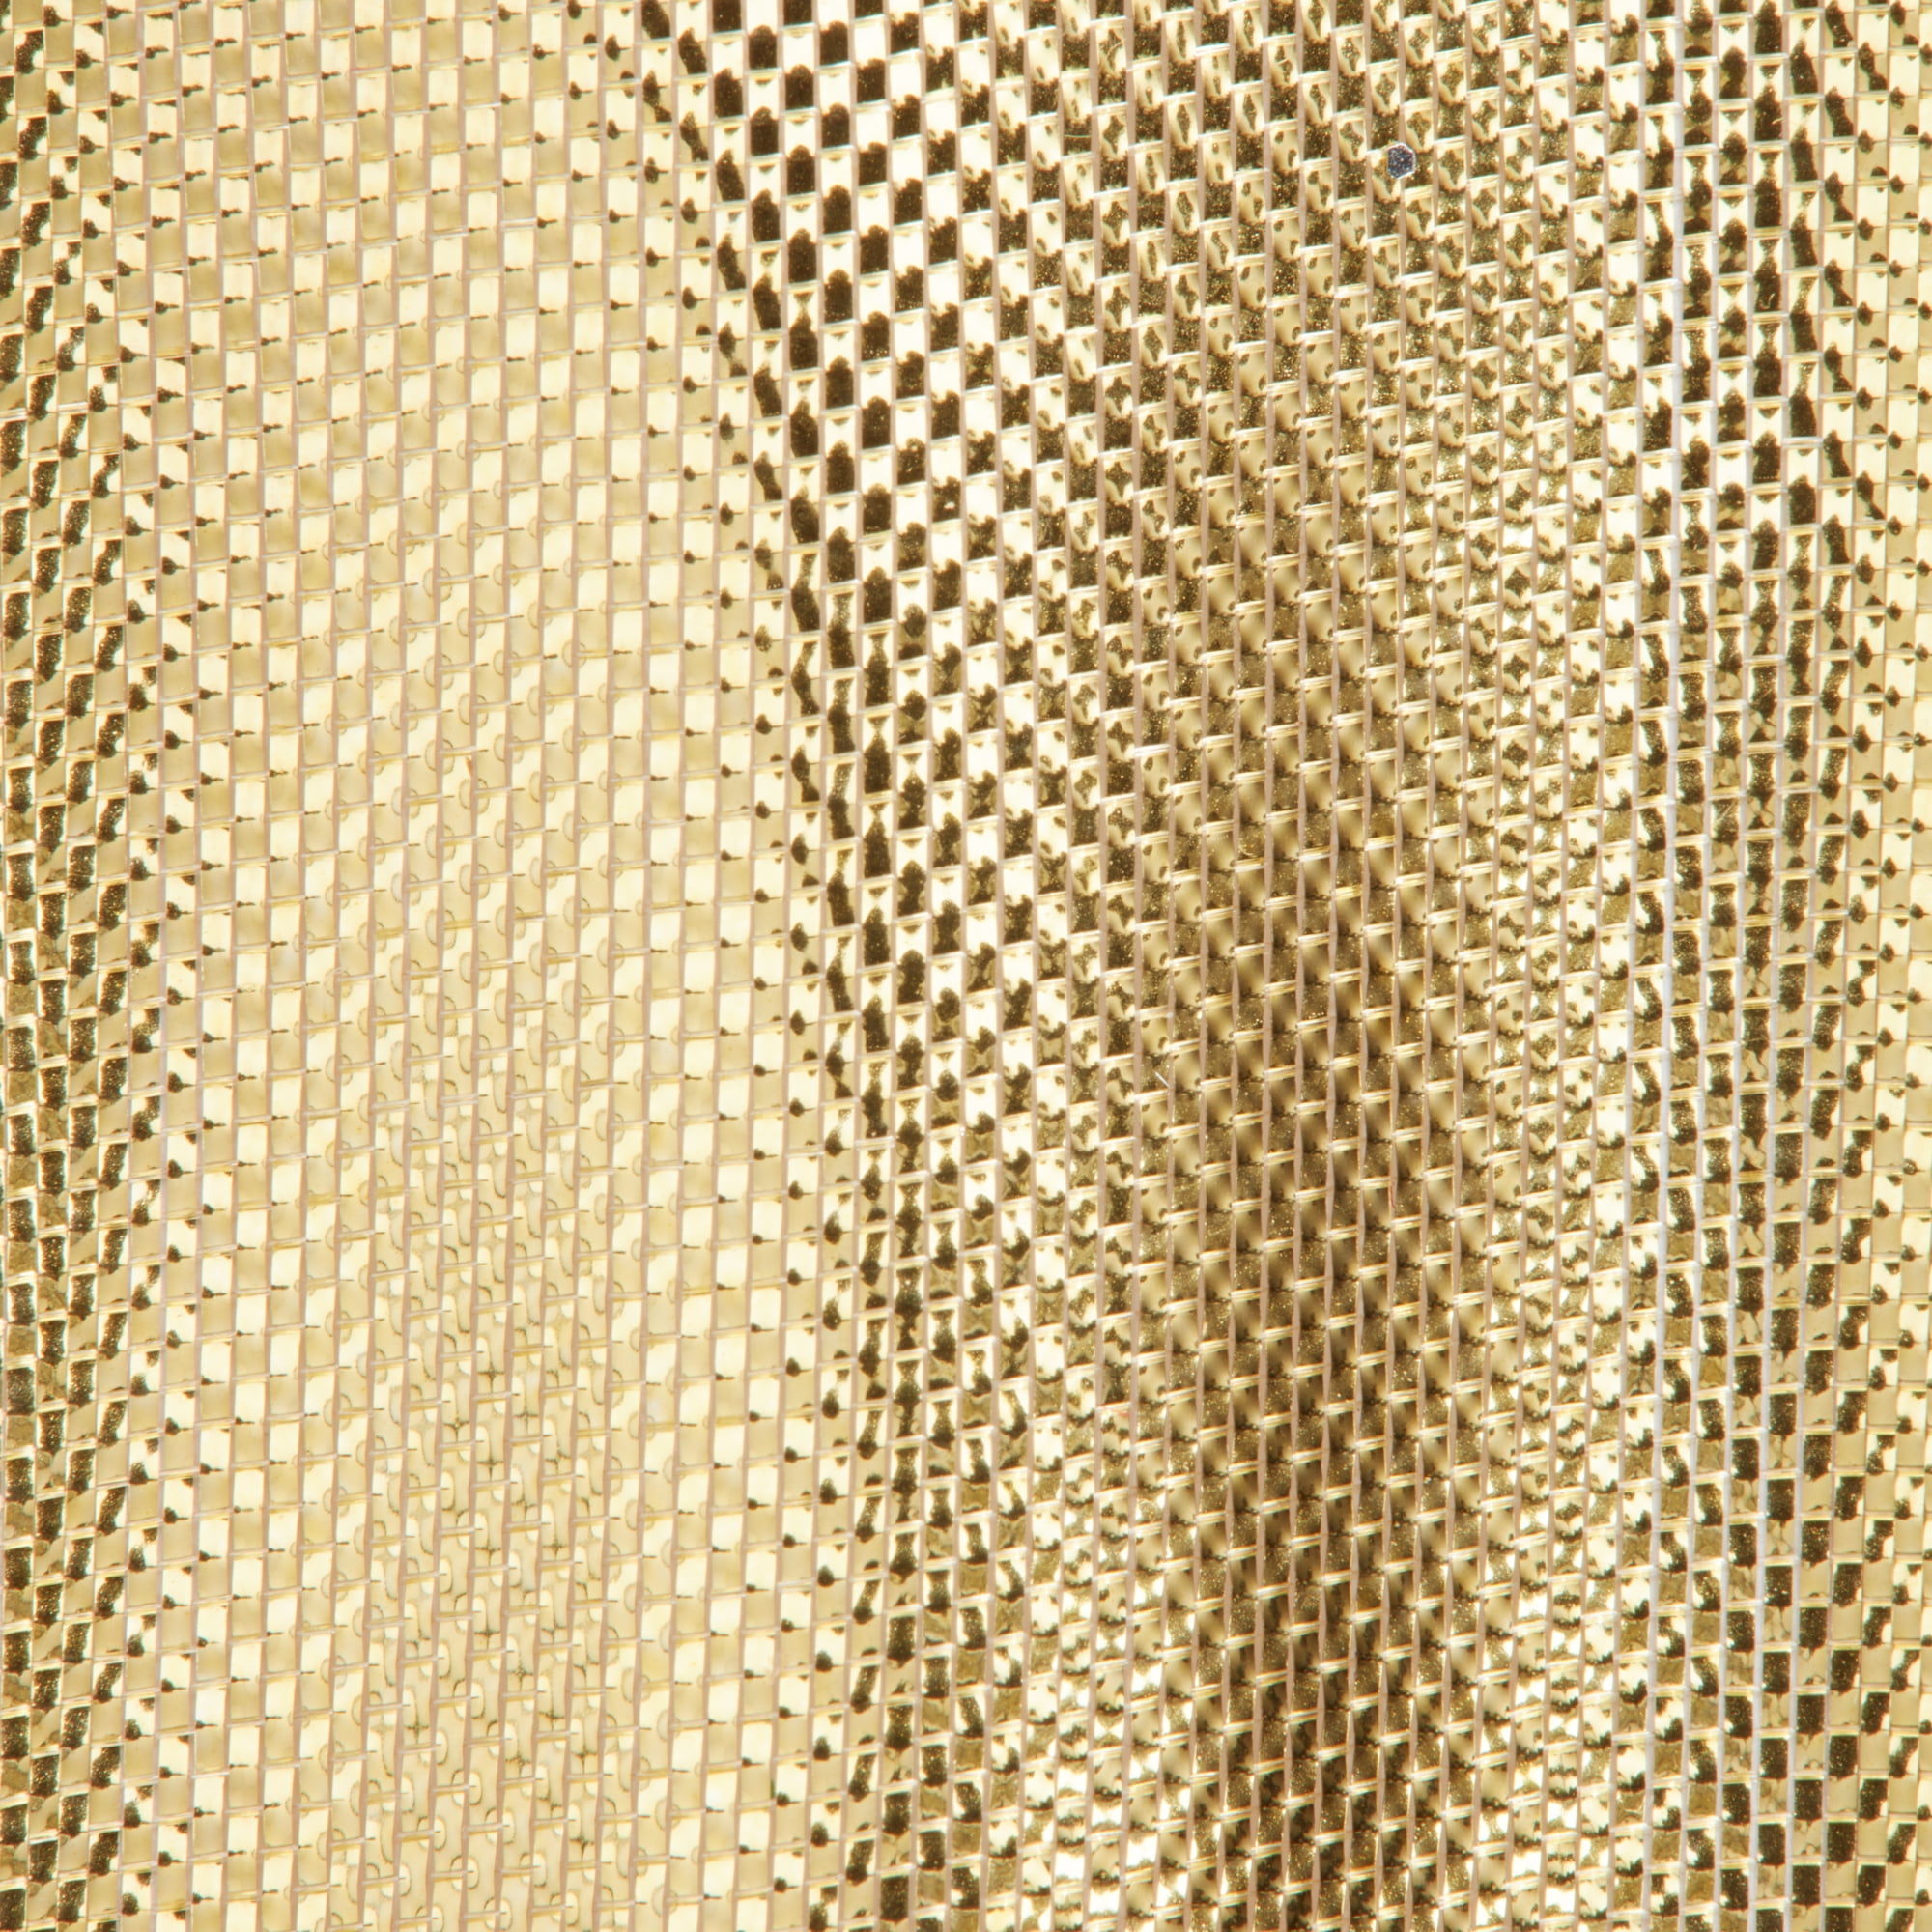 Metallic Gold Mesh Wired Ribbon, 1-1/2x25 Yards